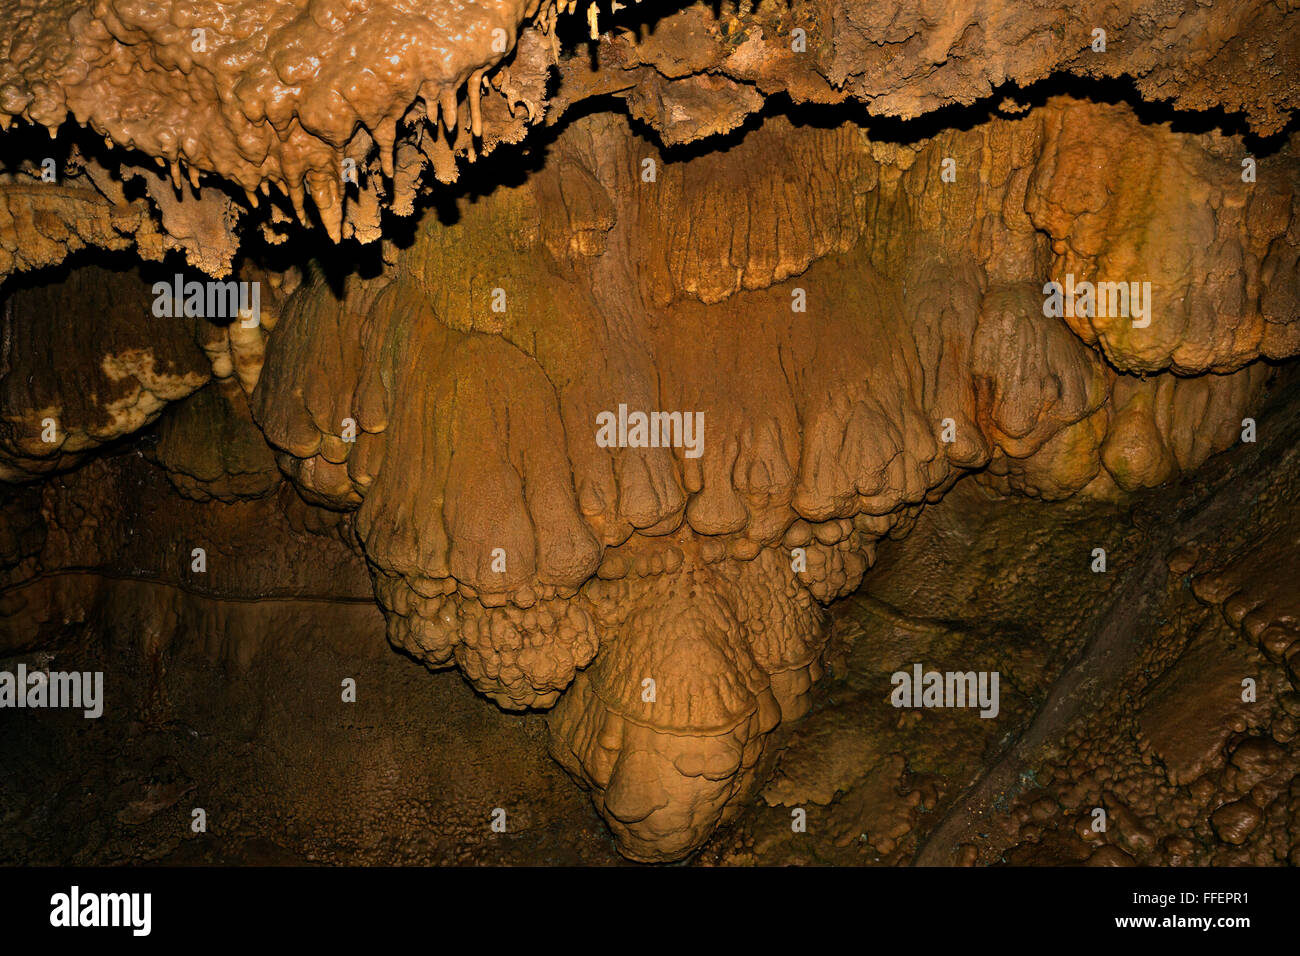 CA02845-00... Kalifornien - Schmelzstein und kannelierte Säulen in den Kalkstein Lake Shasta Caverns, ein National Natural Landmark. Stockfoto